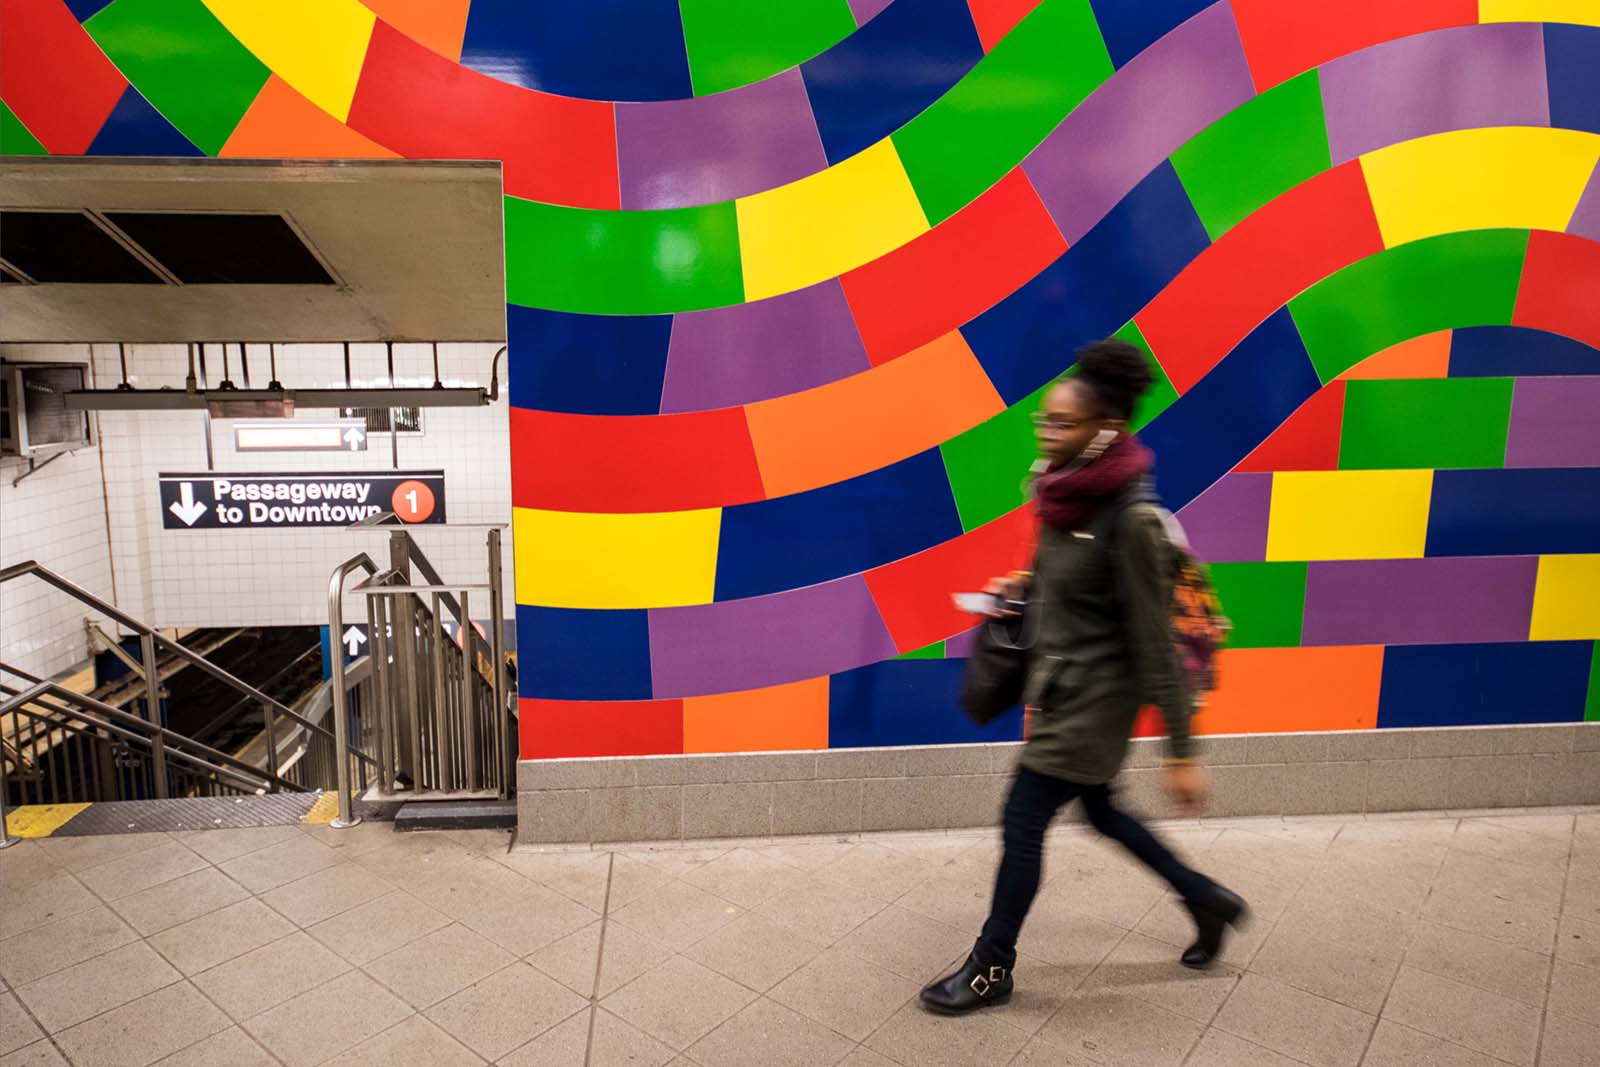 Kunst im öffentlichen Raum (Subway Columbus Circle)-1 (Kopie)